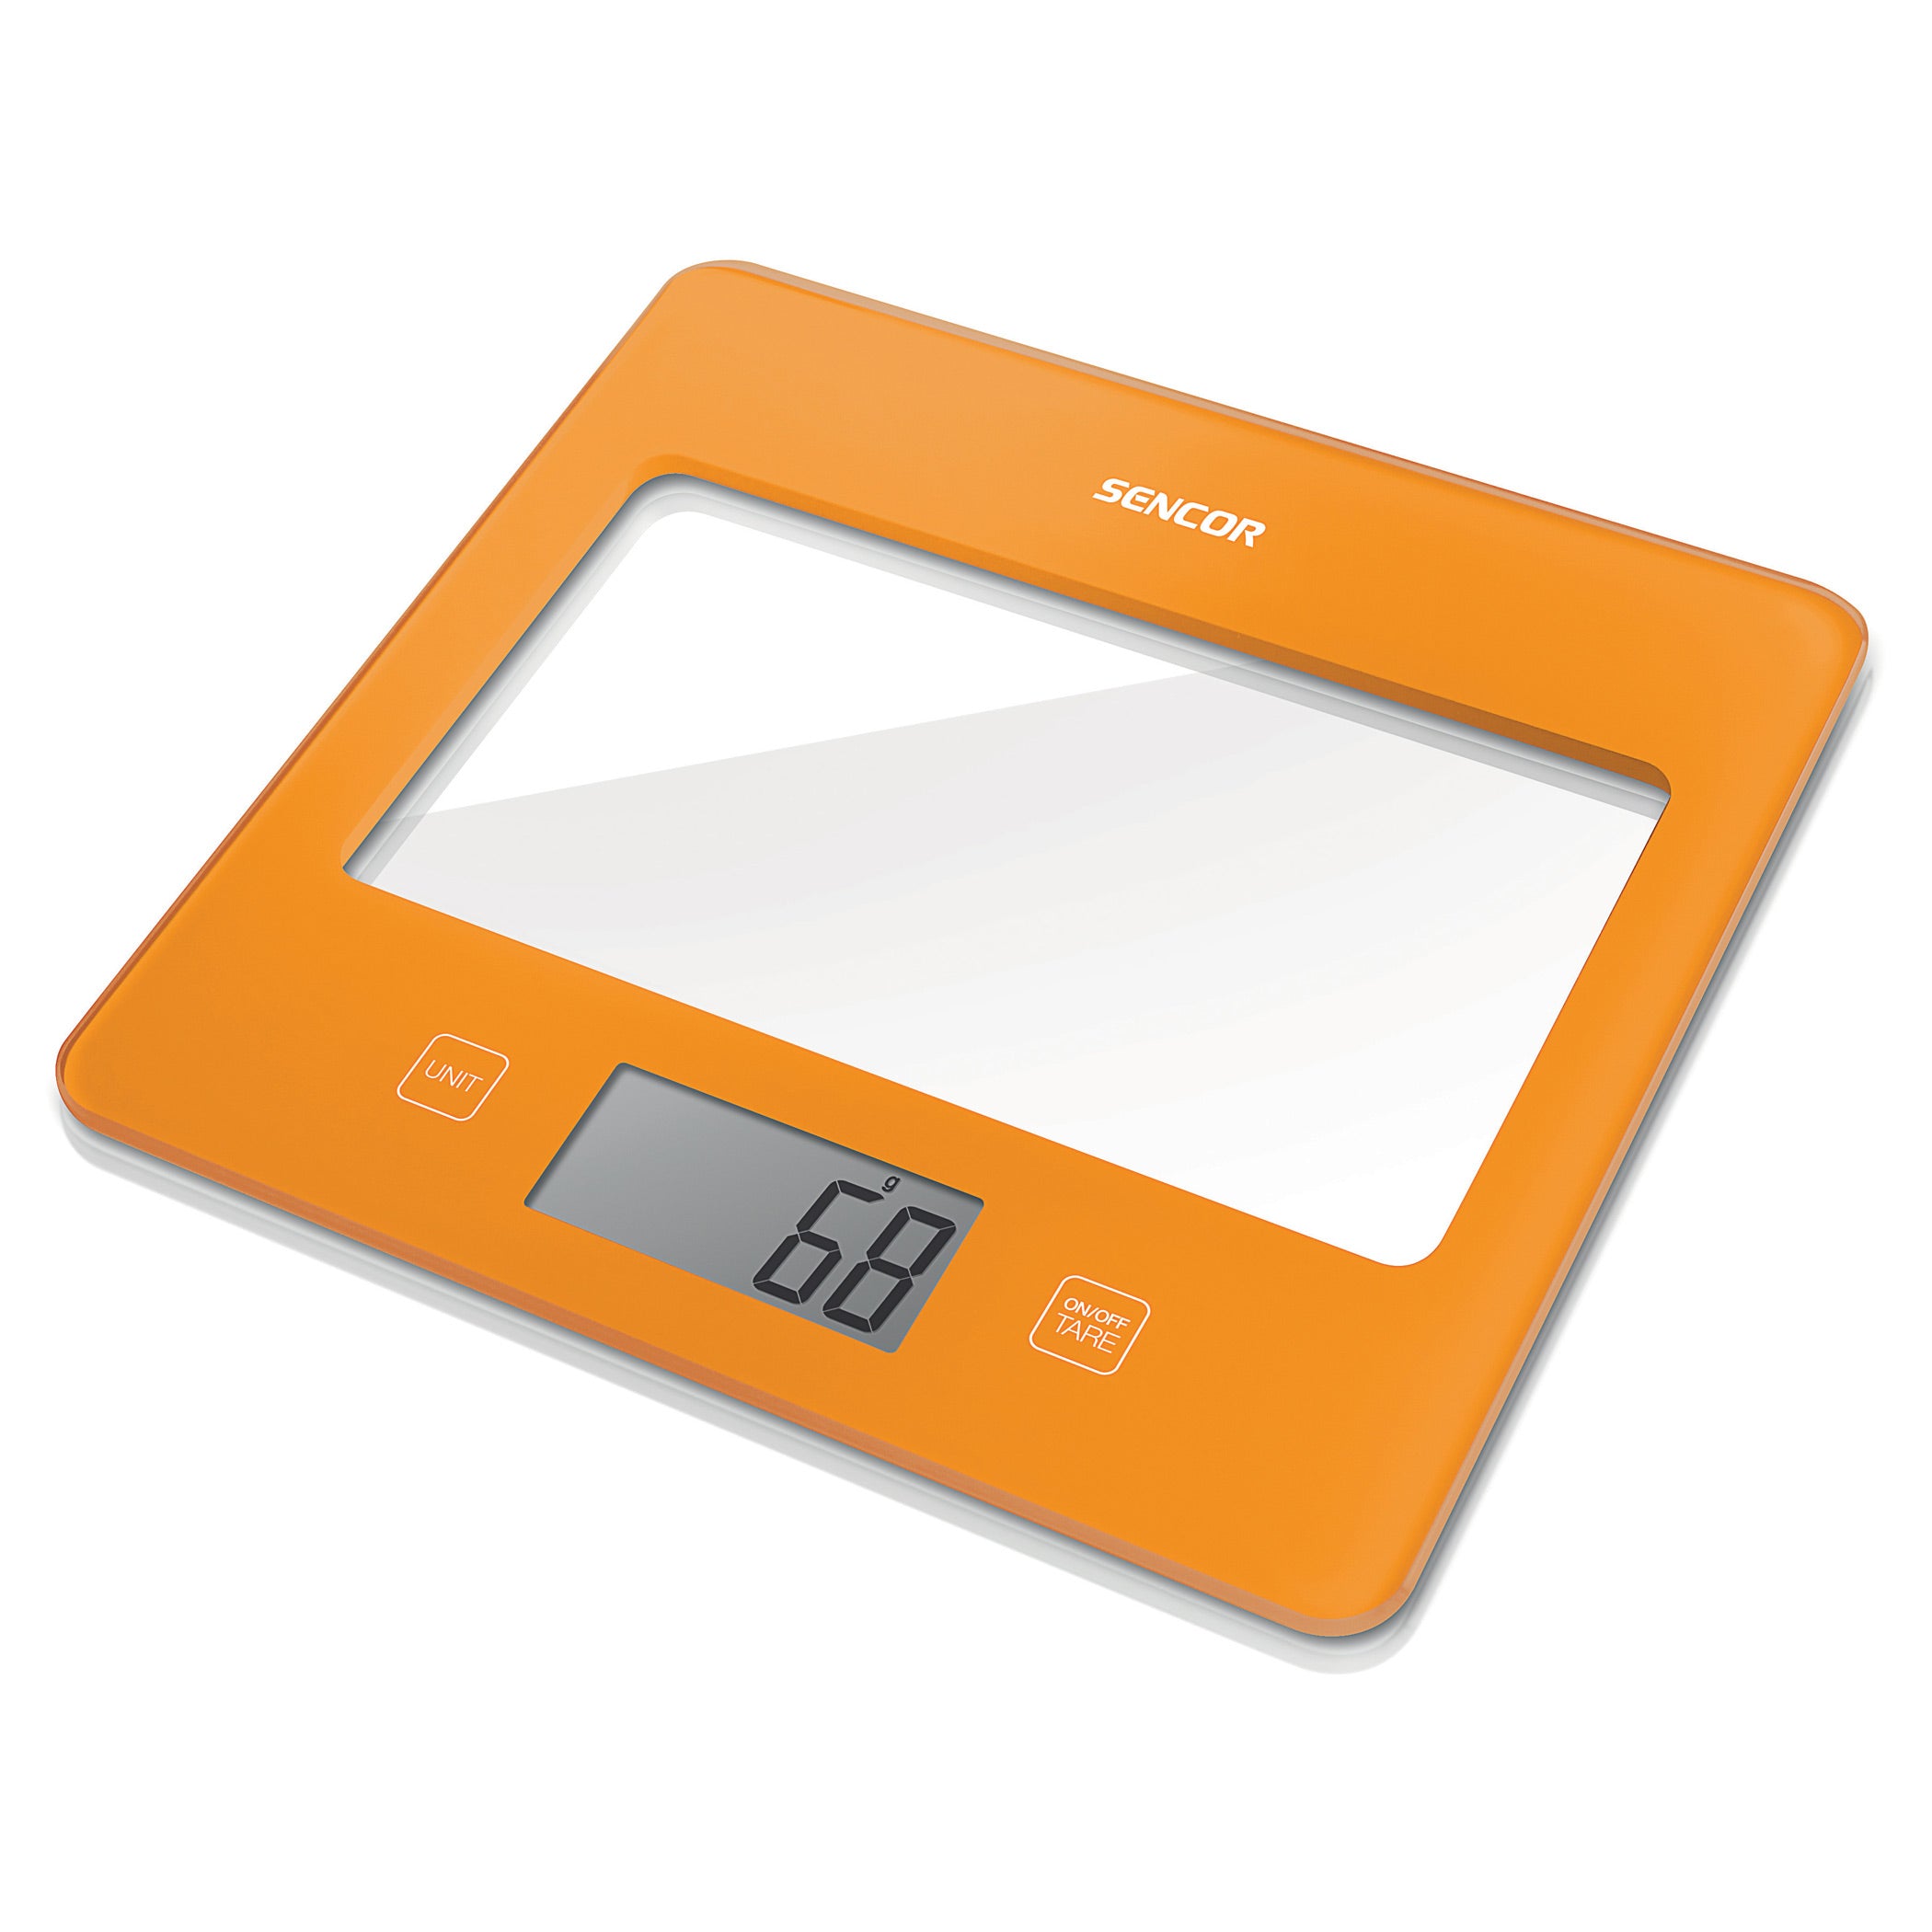 Bilancia da cucina arancione Sencor design ultra slim (16mm) display LCD larghe dimensioni